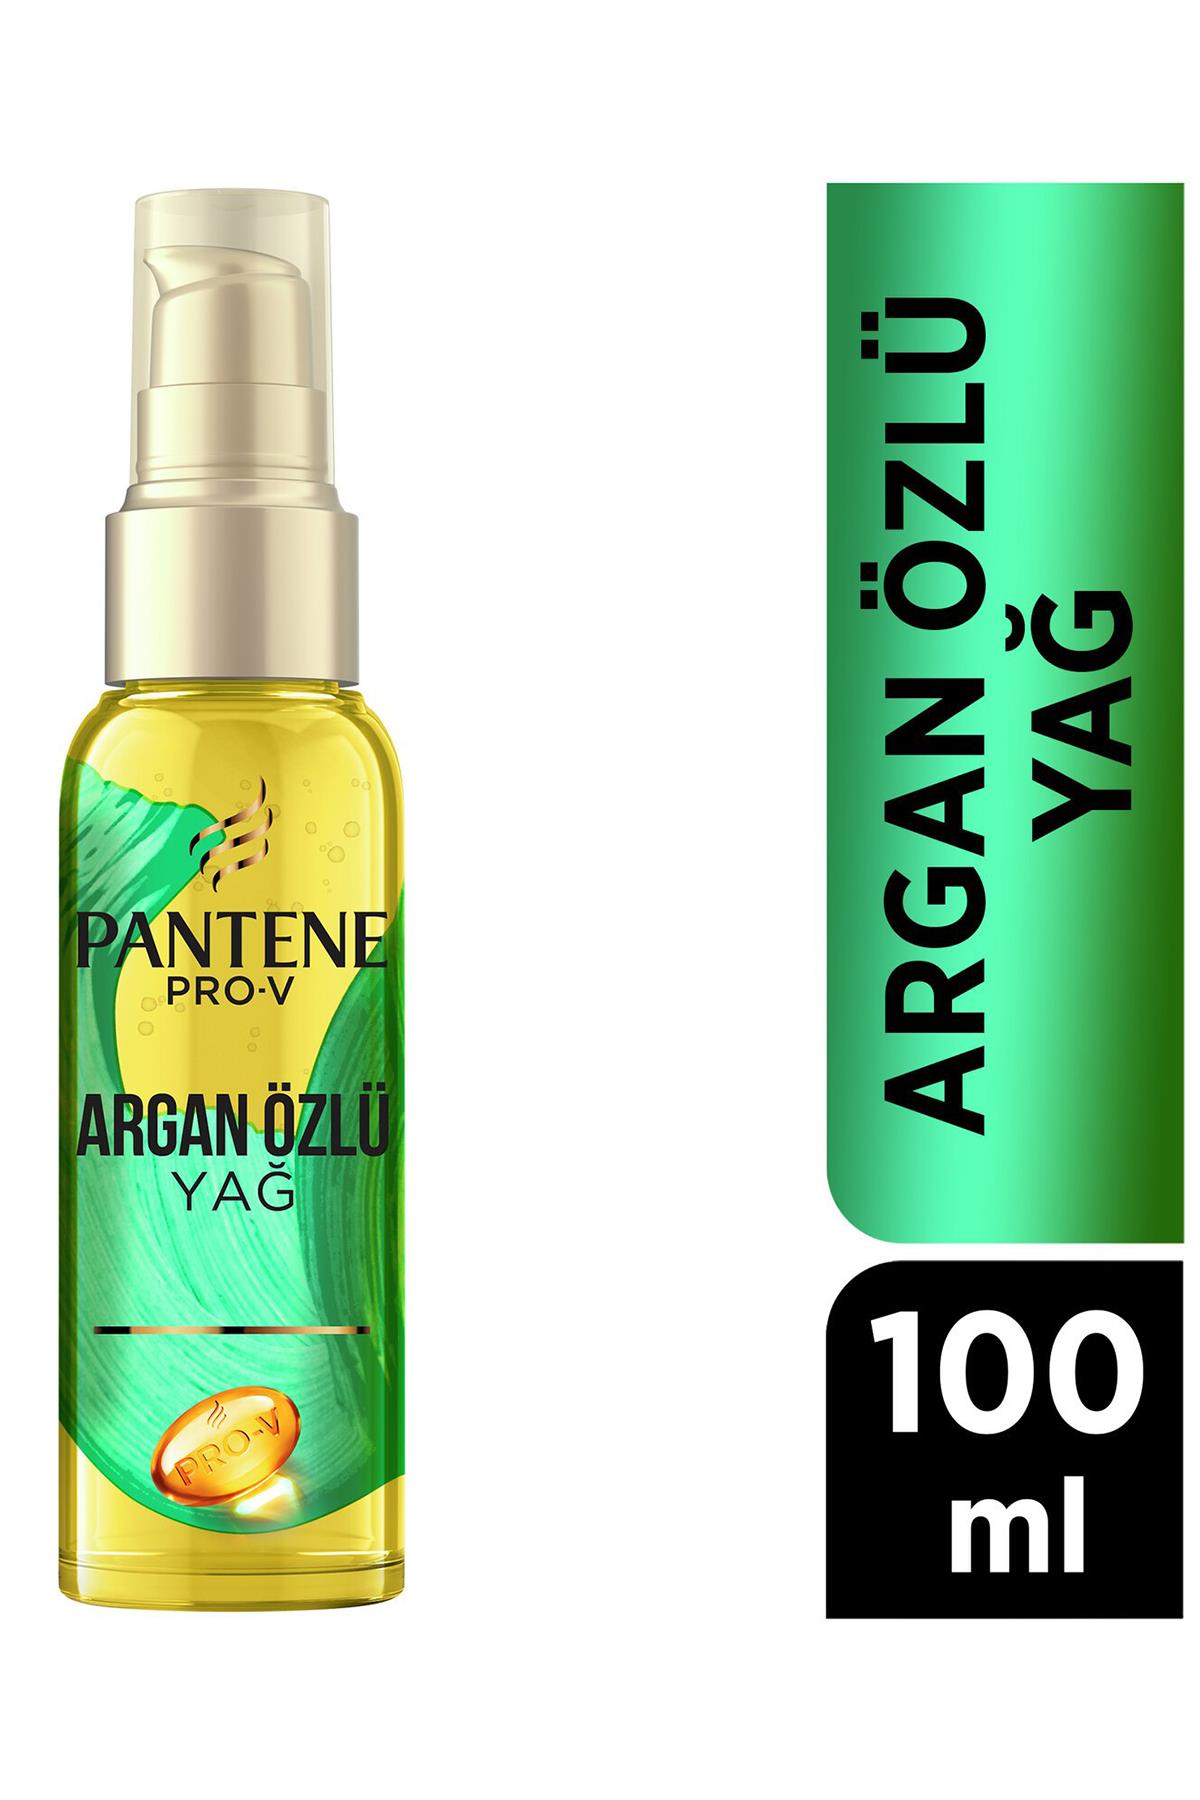 pantene-pro-v-argan-yagi-ozlu-sac-bakim-serumu-100-ml-6805-1.jpg